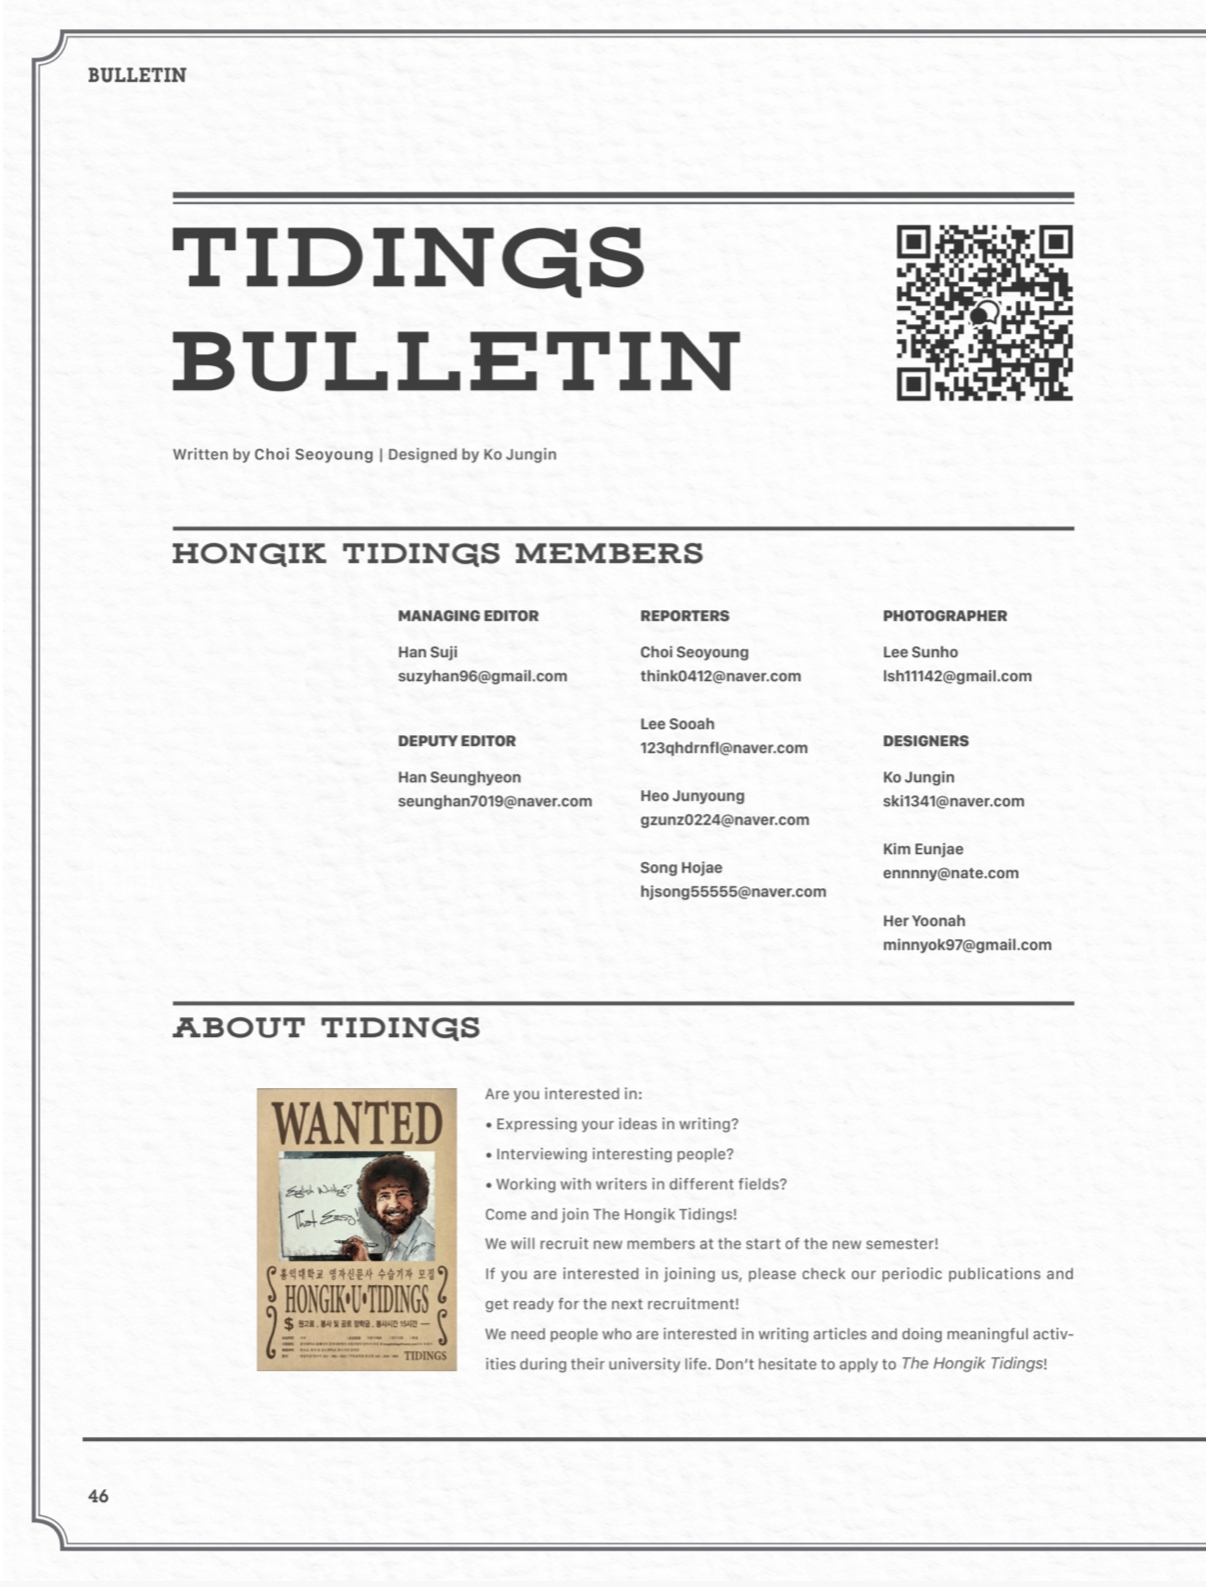 Tidings Bulletin